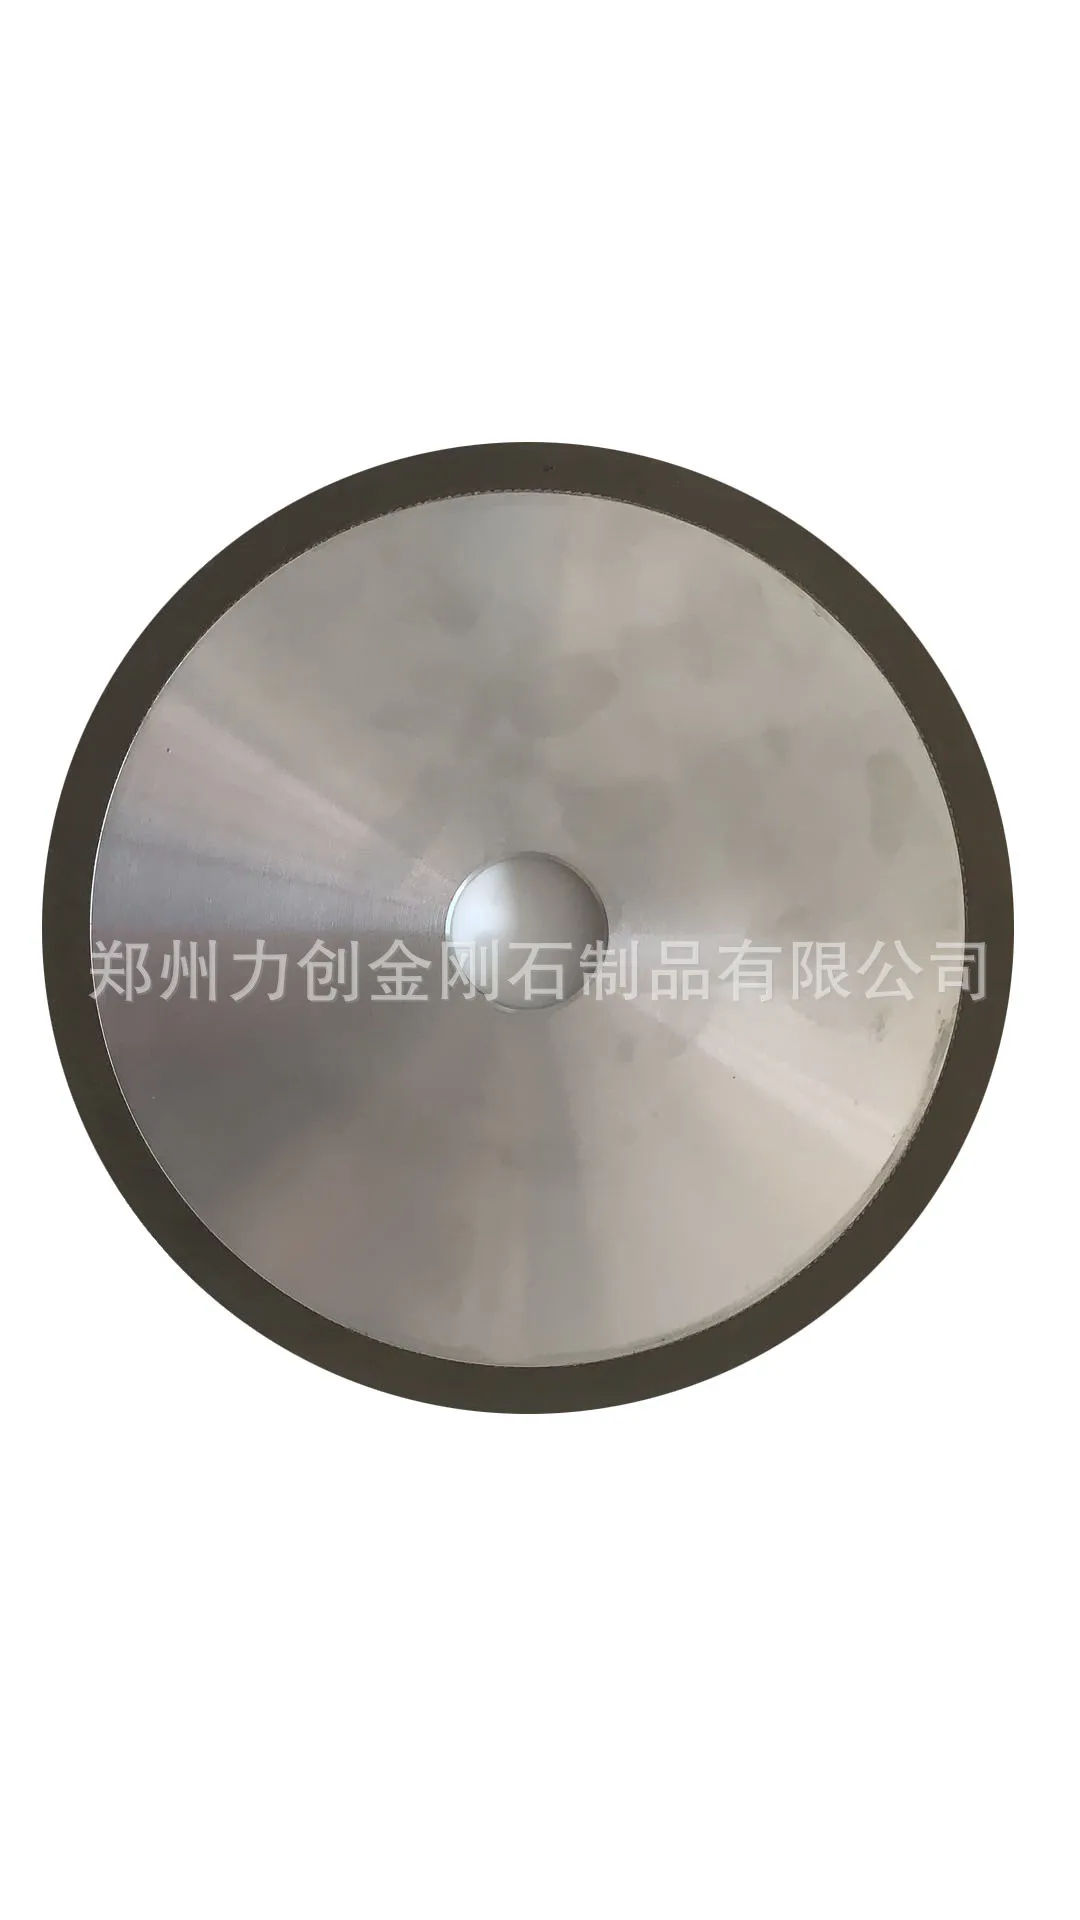 Алмазный грубый шлифовальный круг для шлифования лопастей PCBN CBN композитный от AliExpress RU&CIS NEW